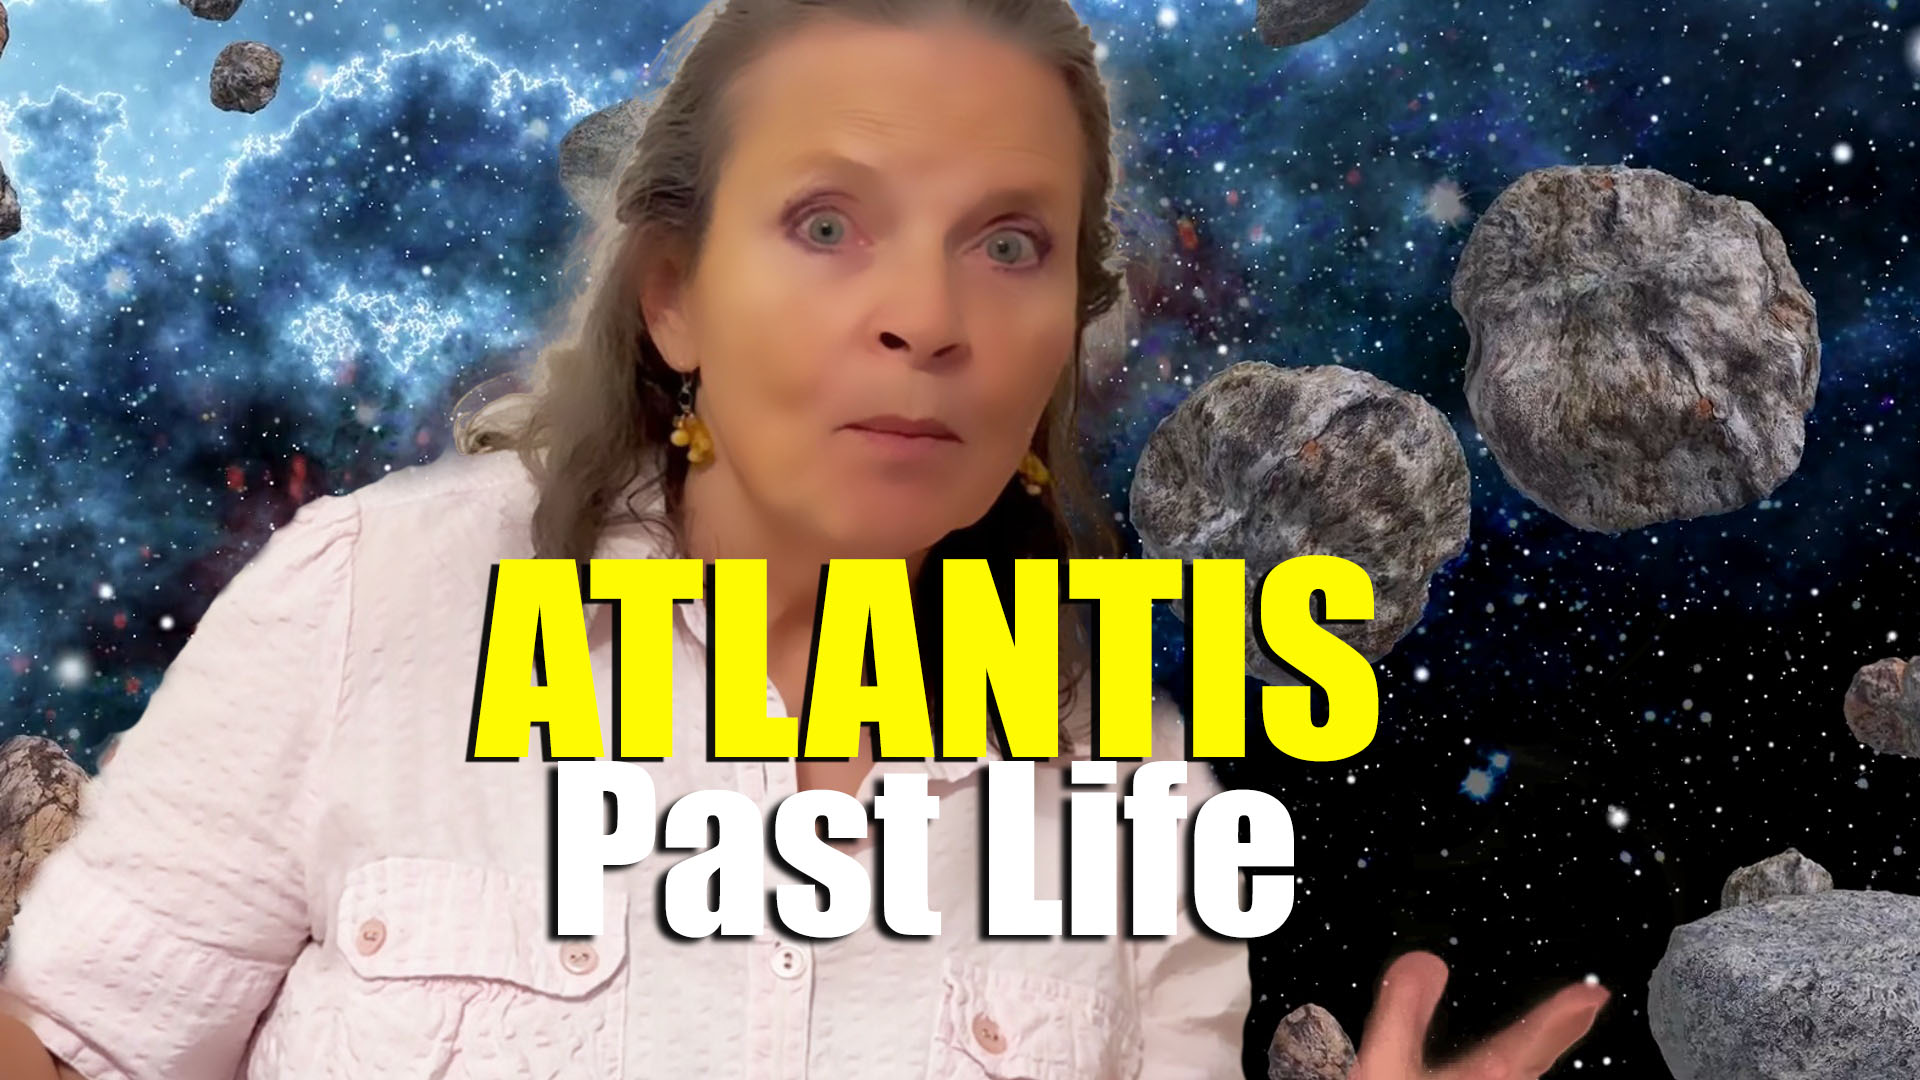 Woman Remembers Past Life in Atlantis